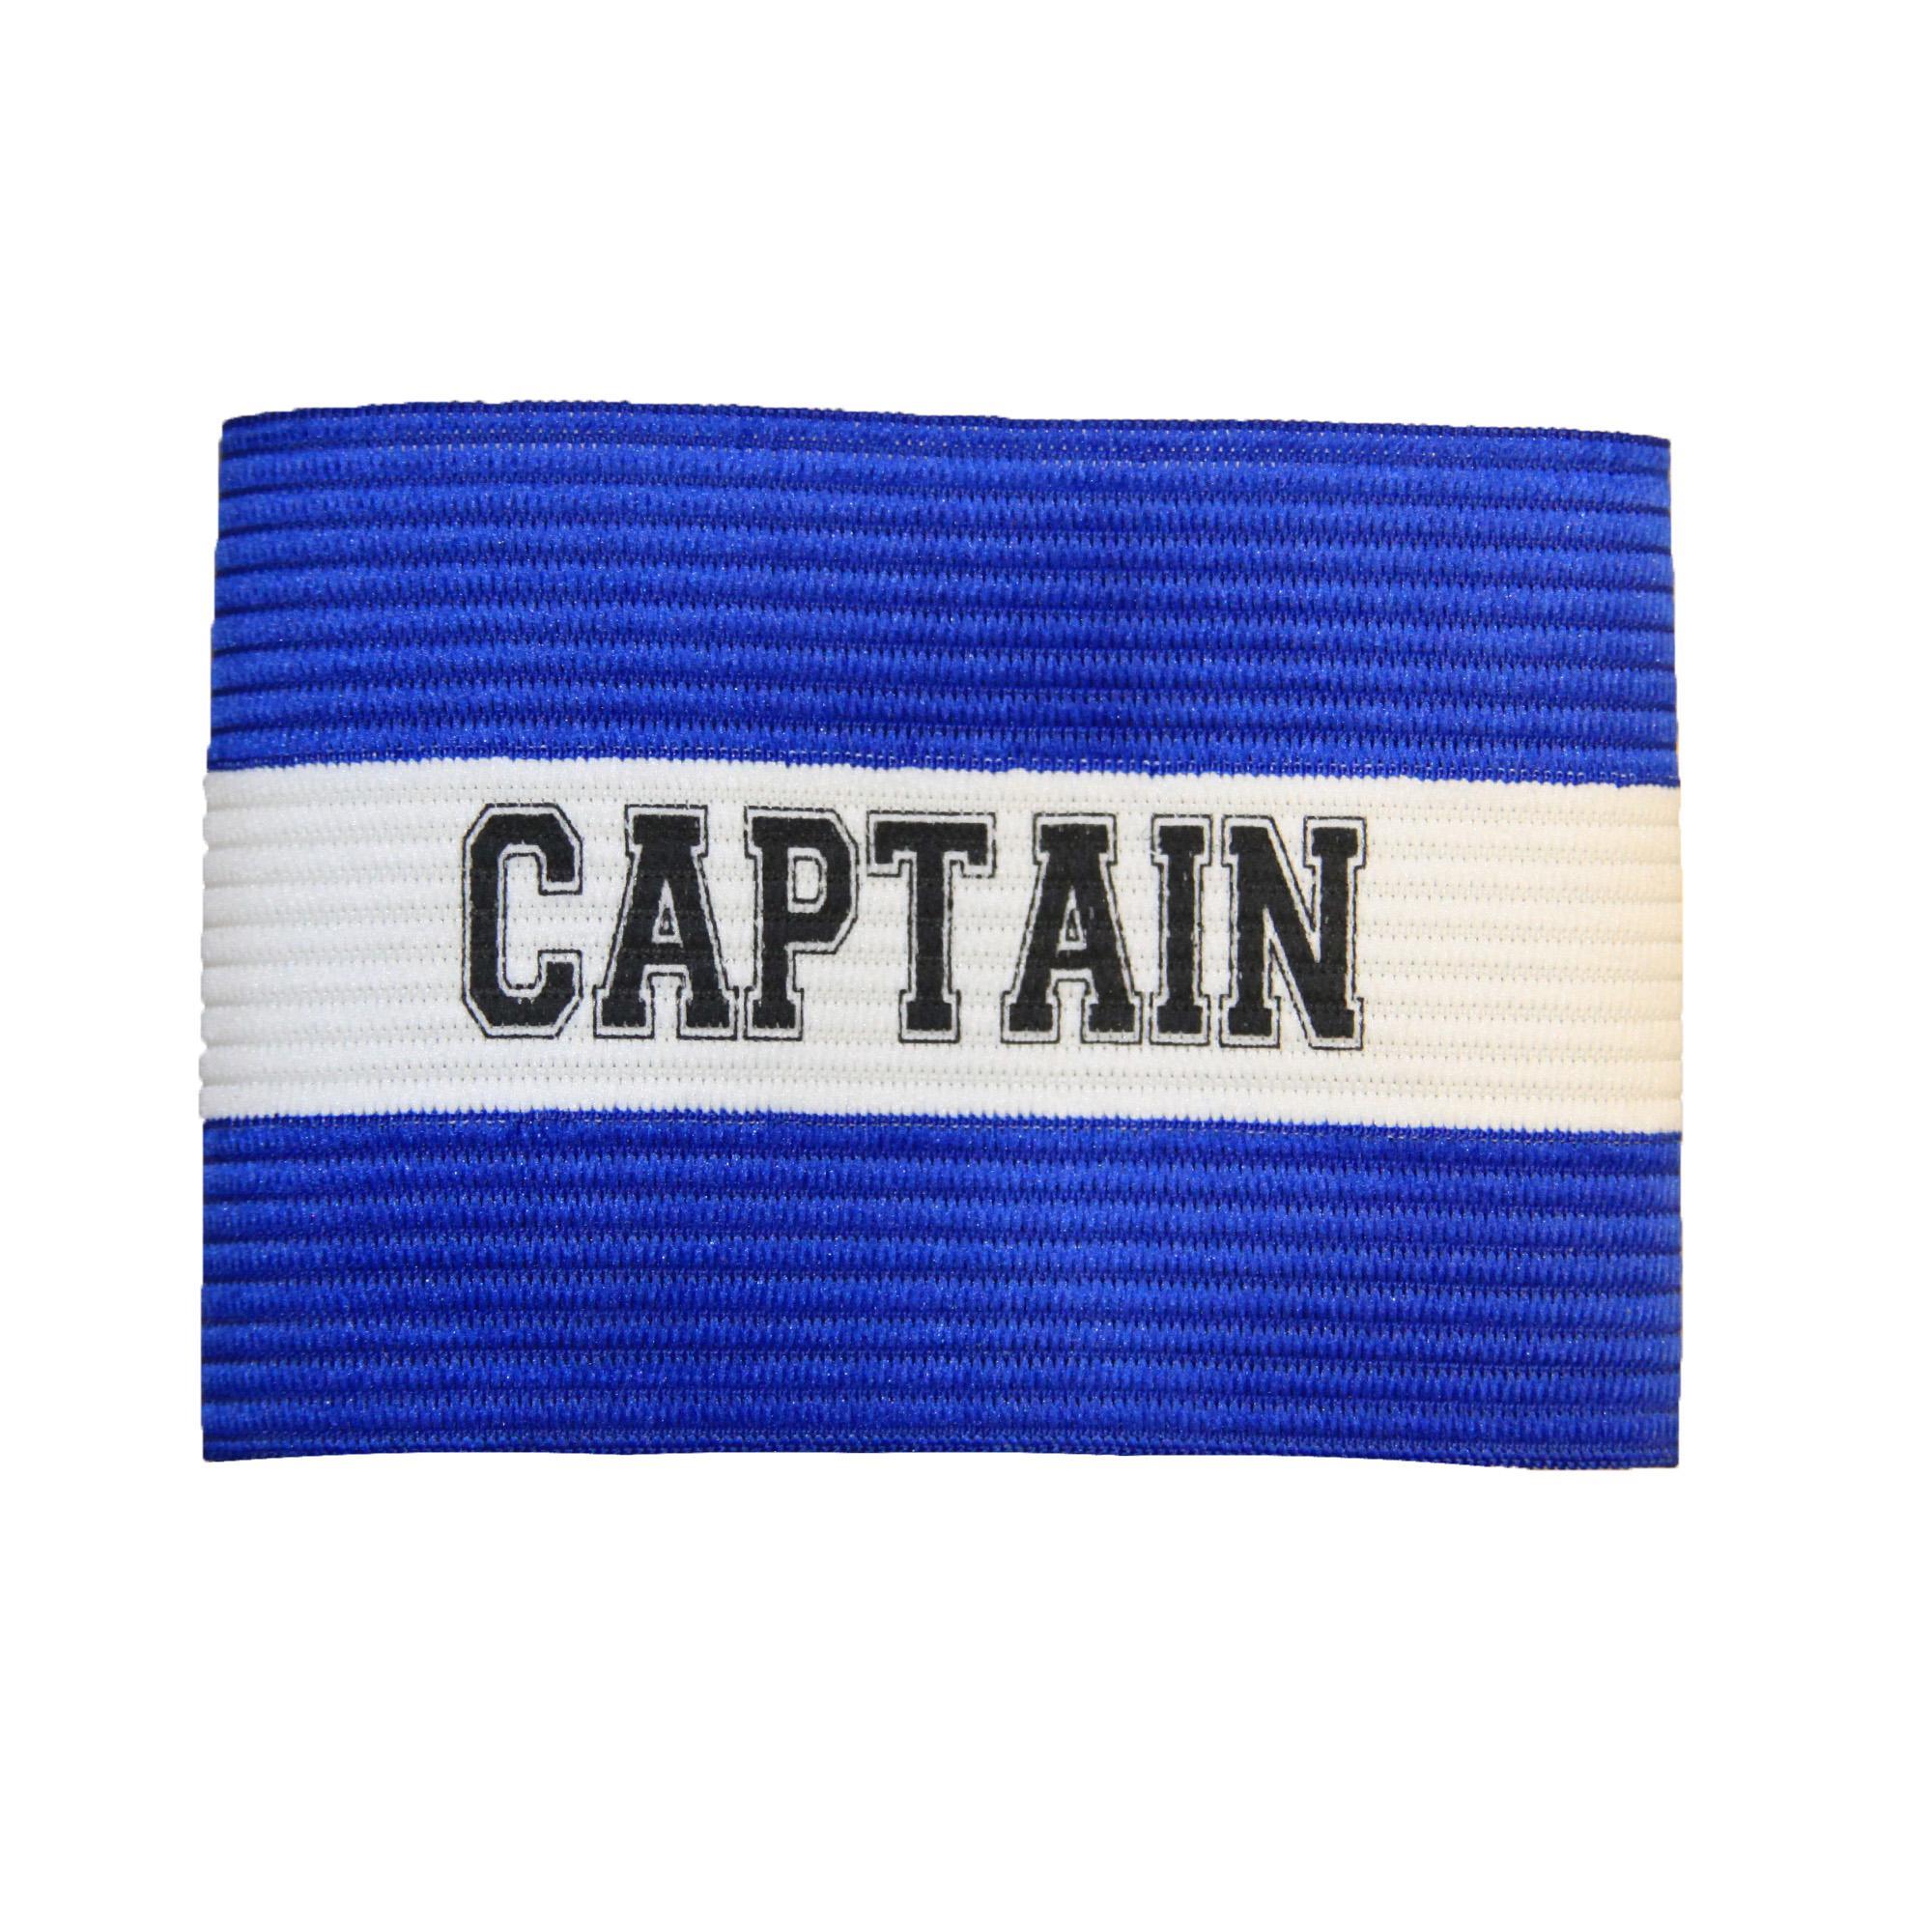 Carta Sport Unisex Adult Captains Armband (Royal Blue/White) (One Size)